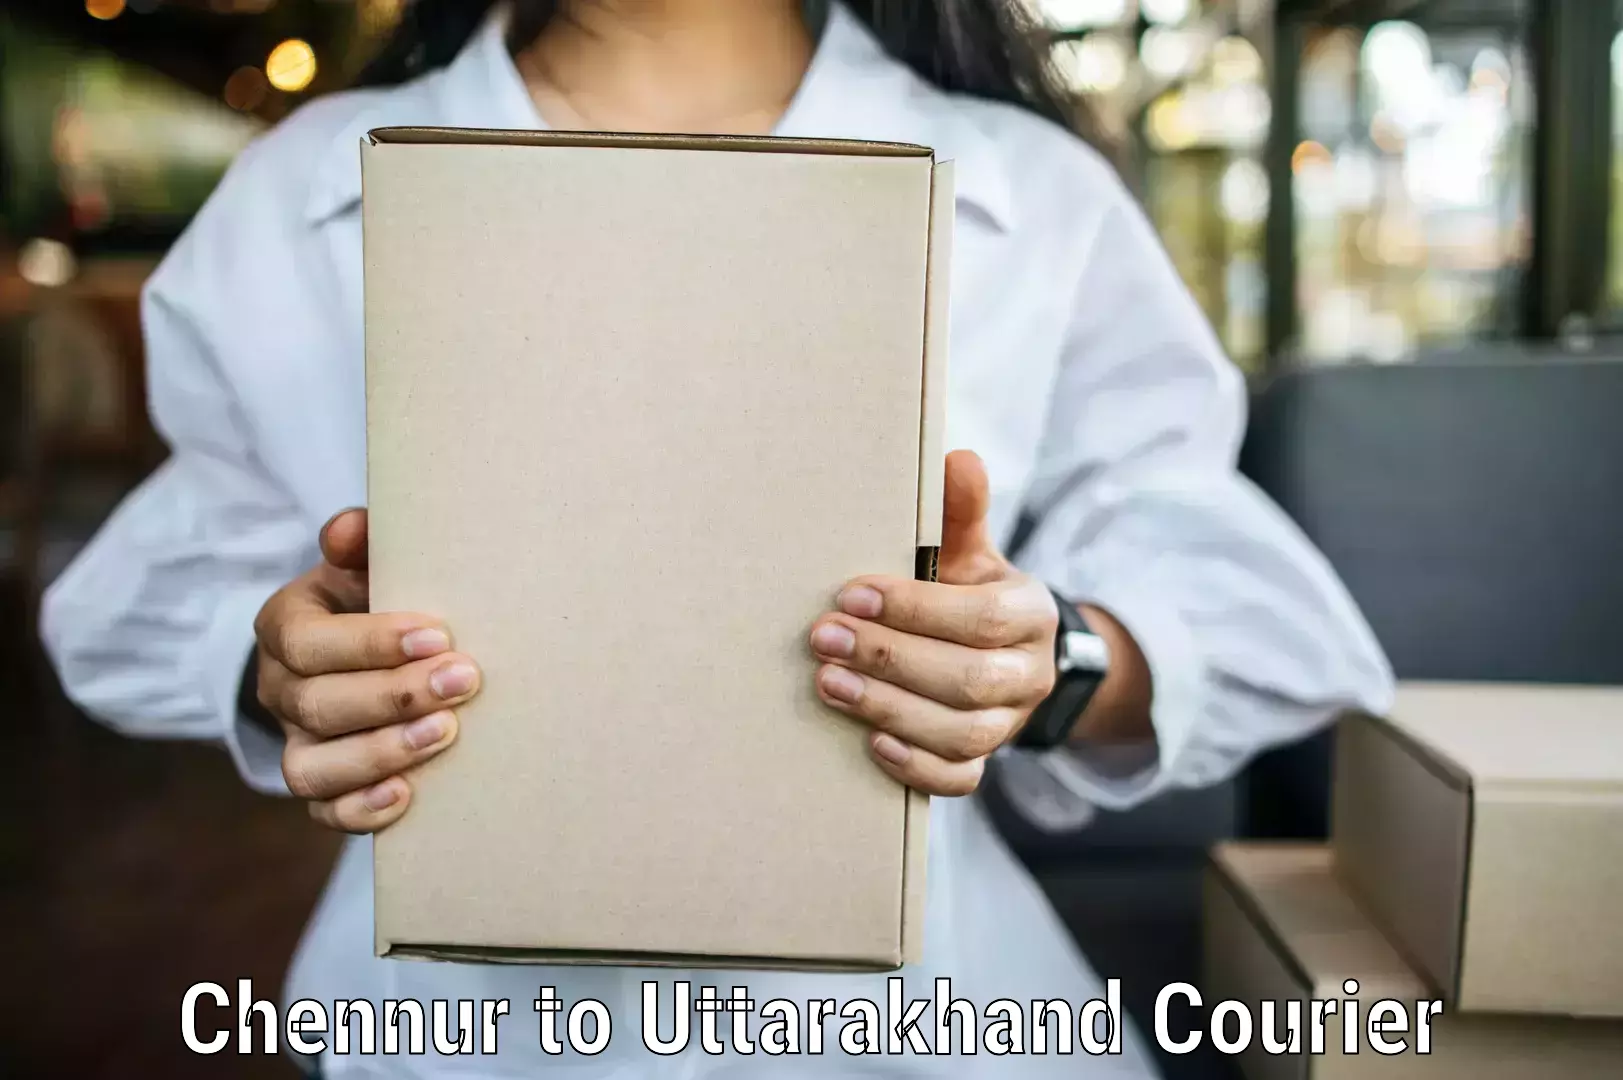 Efficient parcel service Chennur to Dehradun